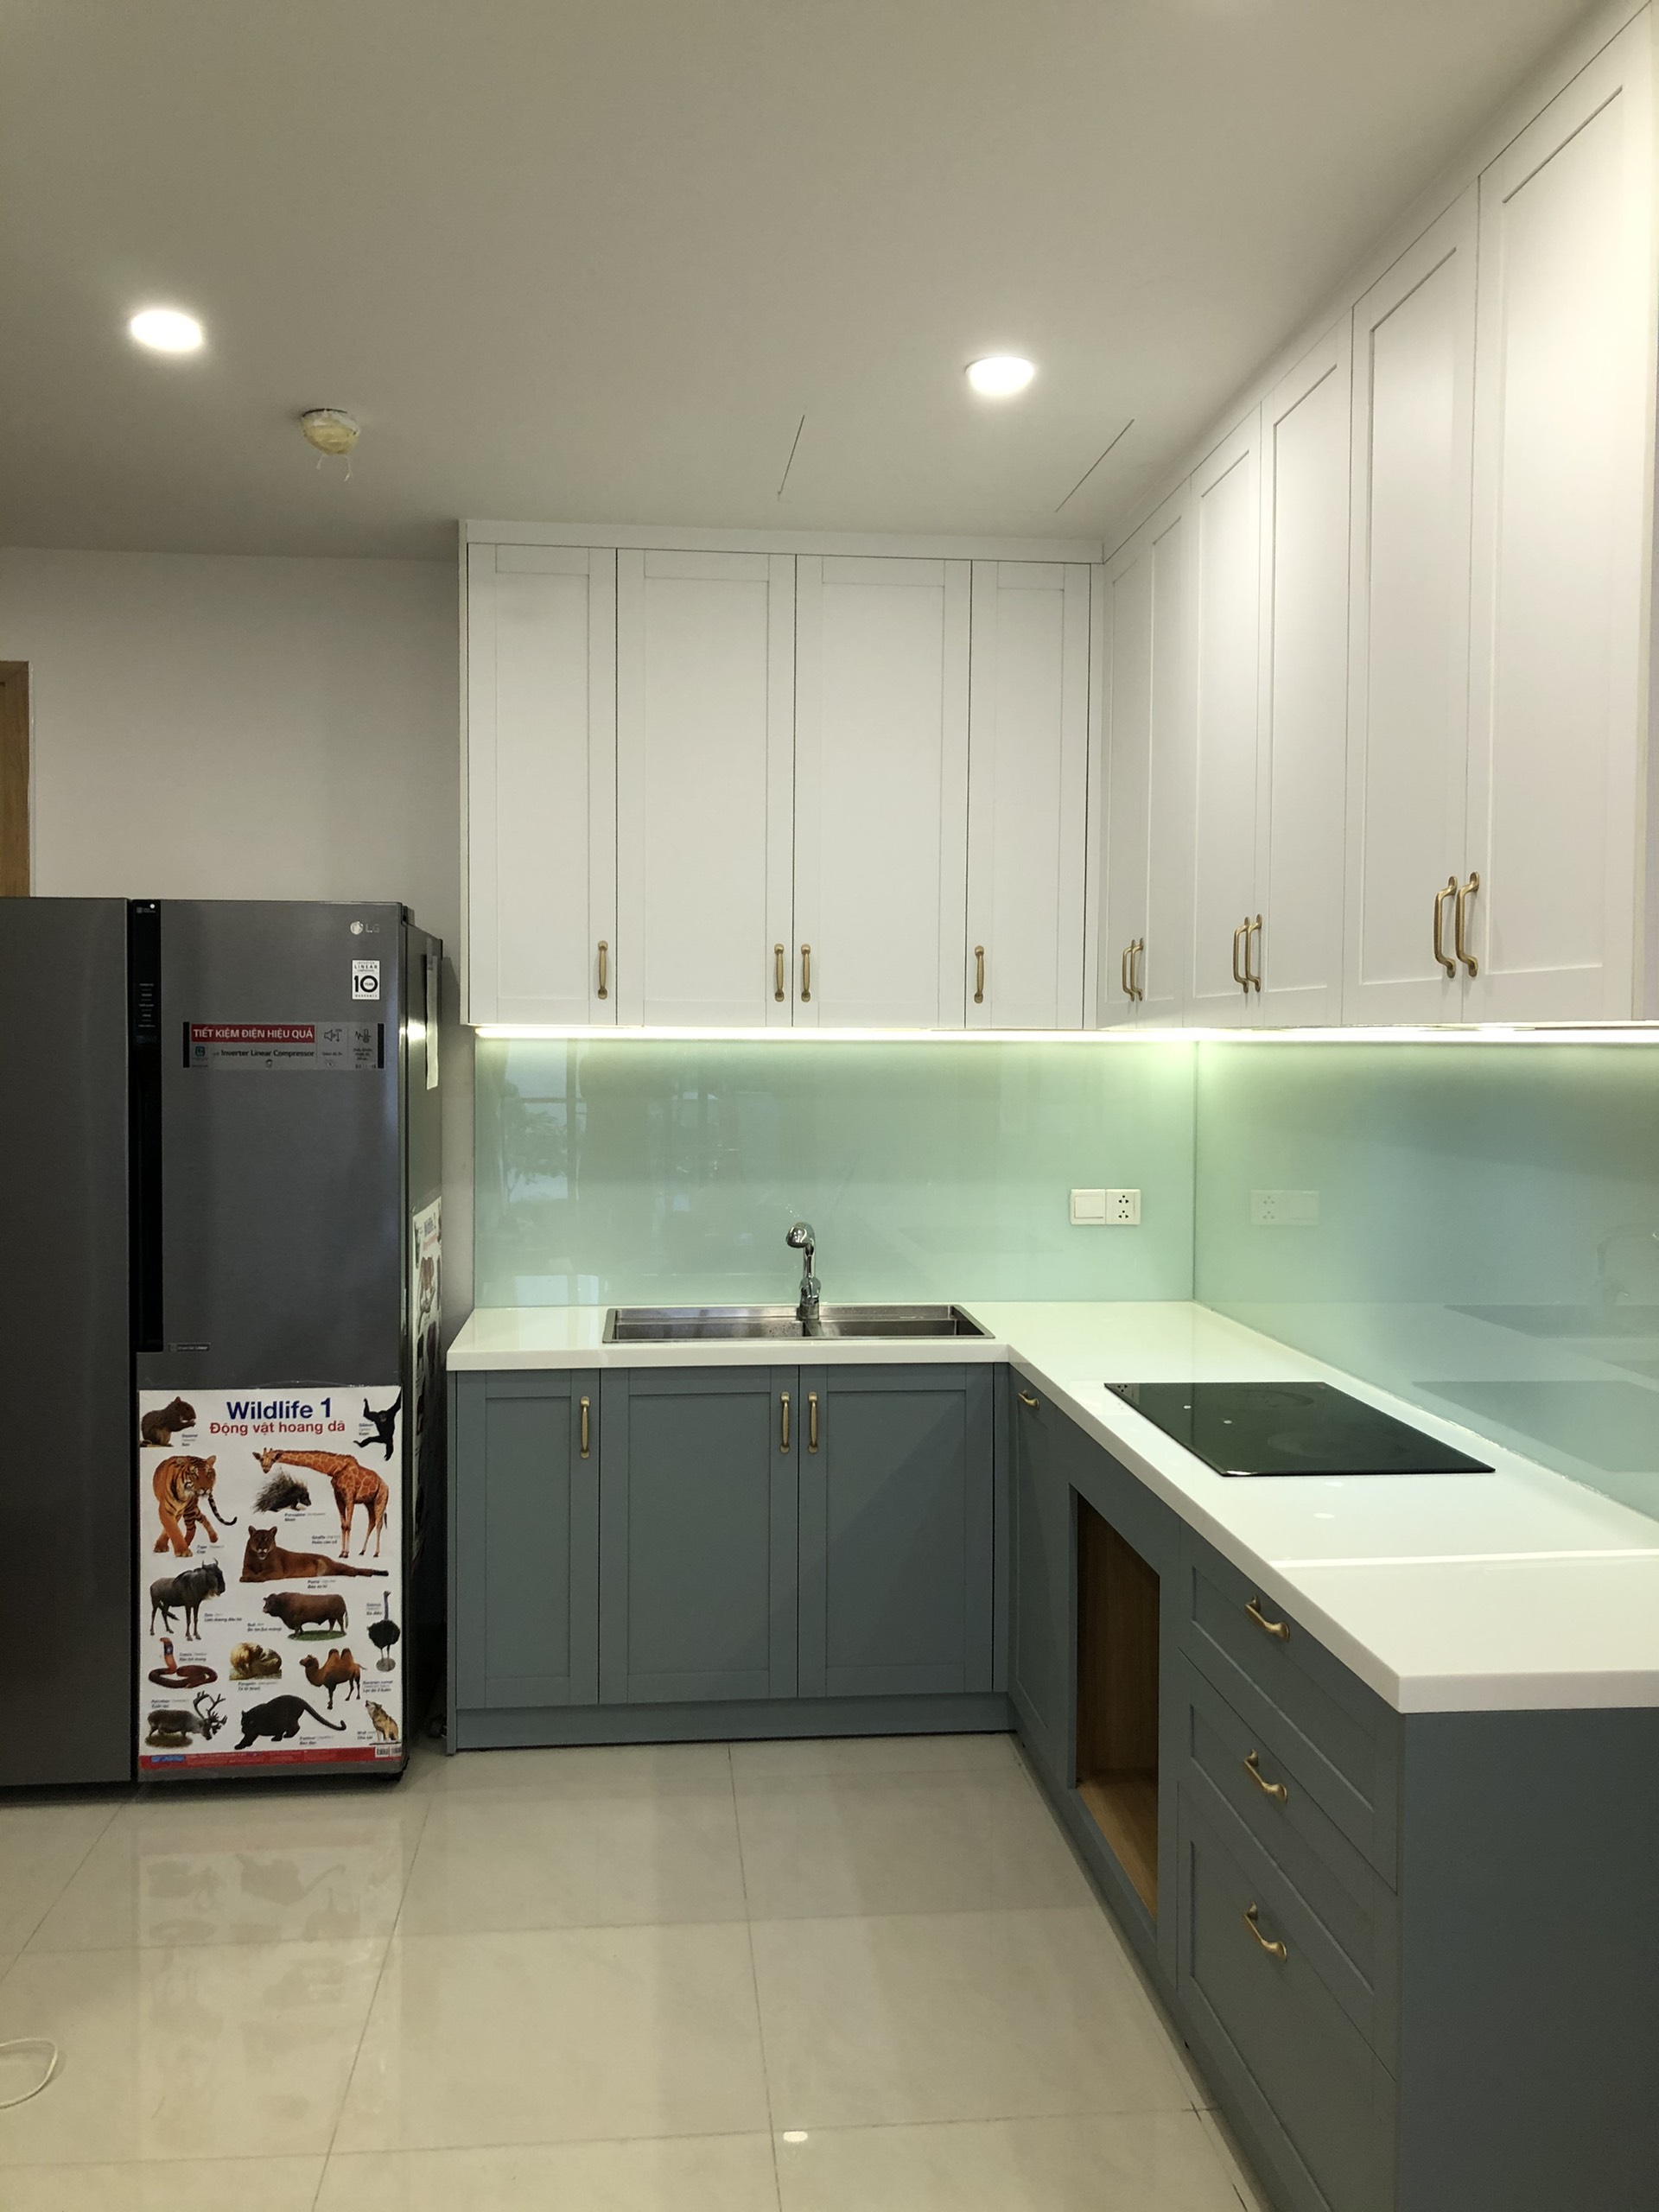 Hình ảnh thực tế nội thất tủ bếp anh khương căn hộ Emerald Tân Phú ảnh 04